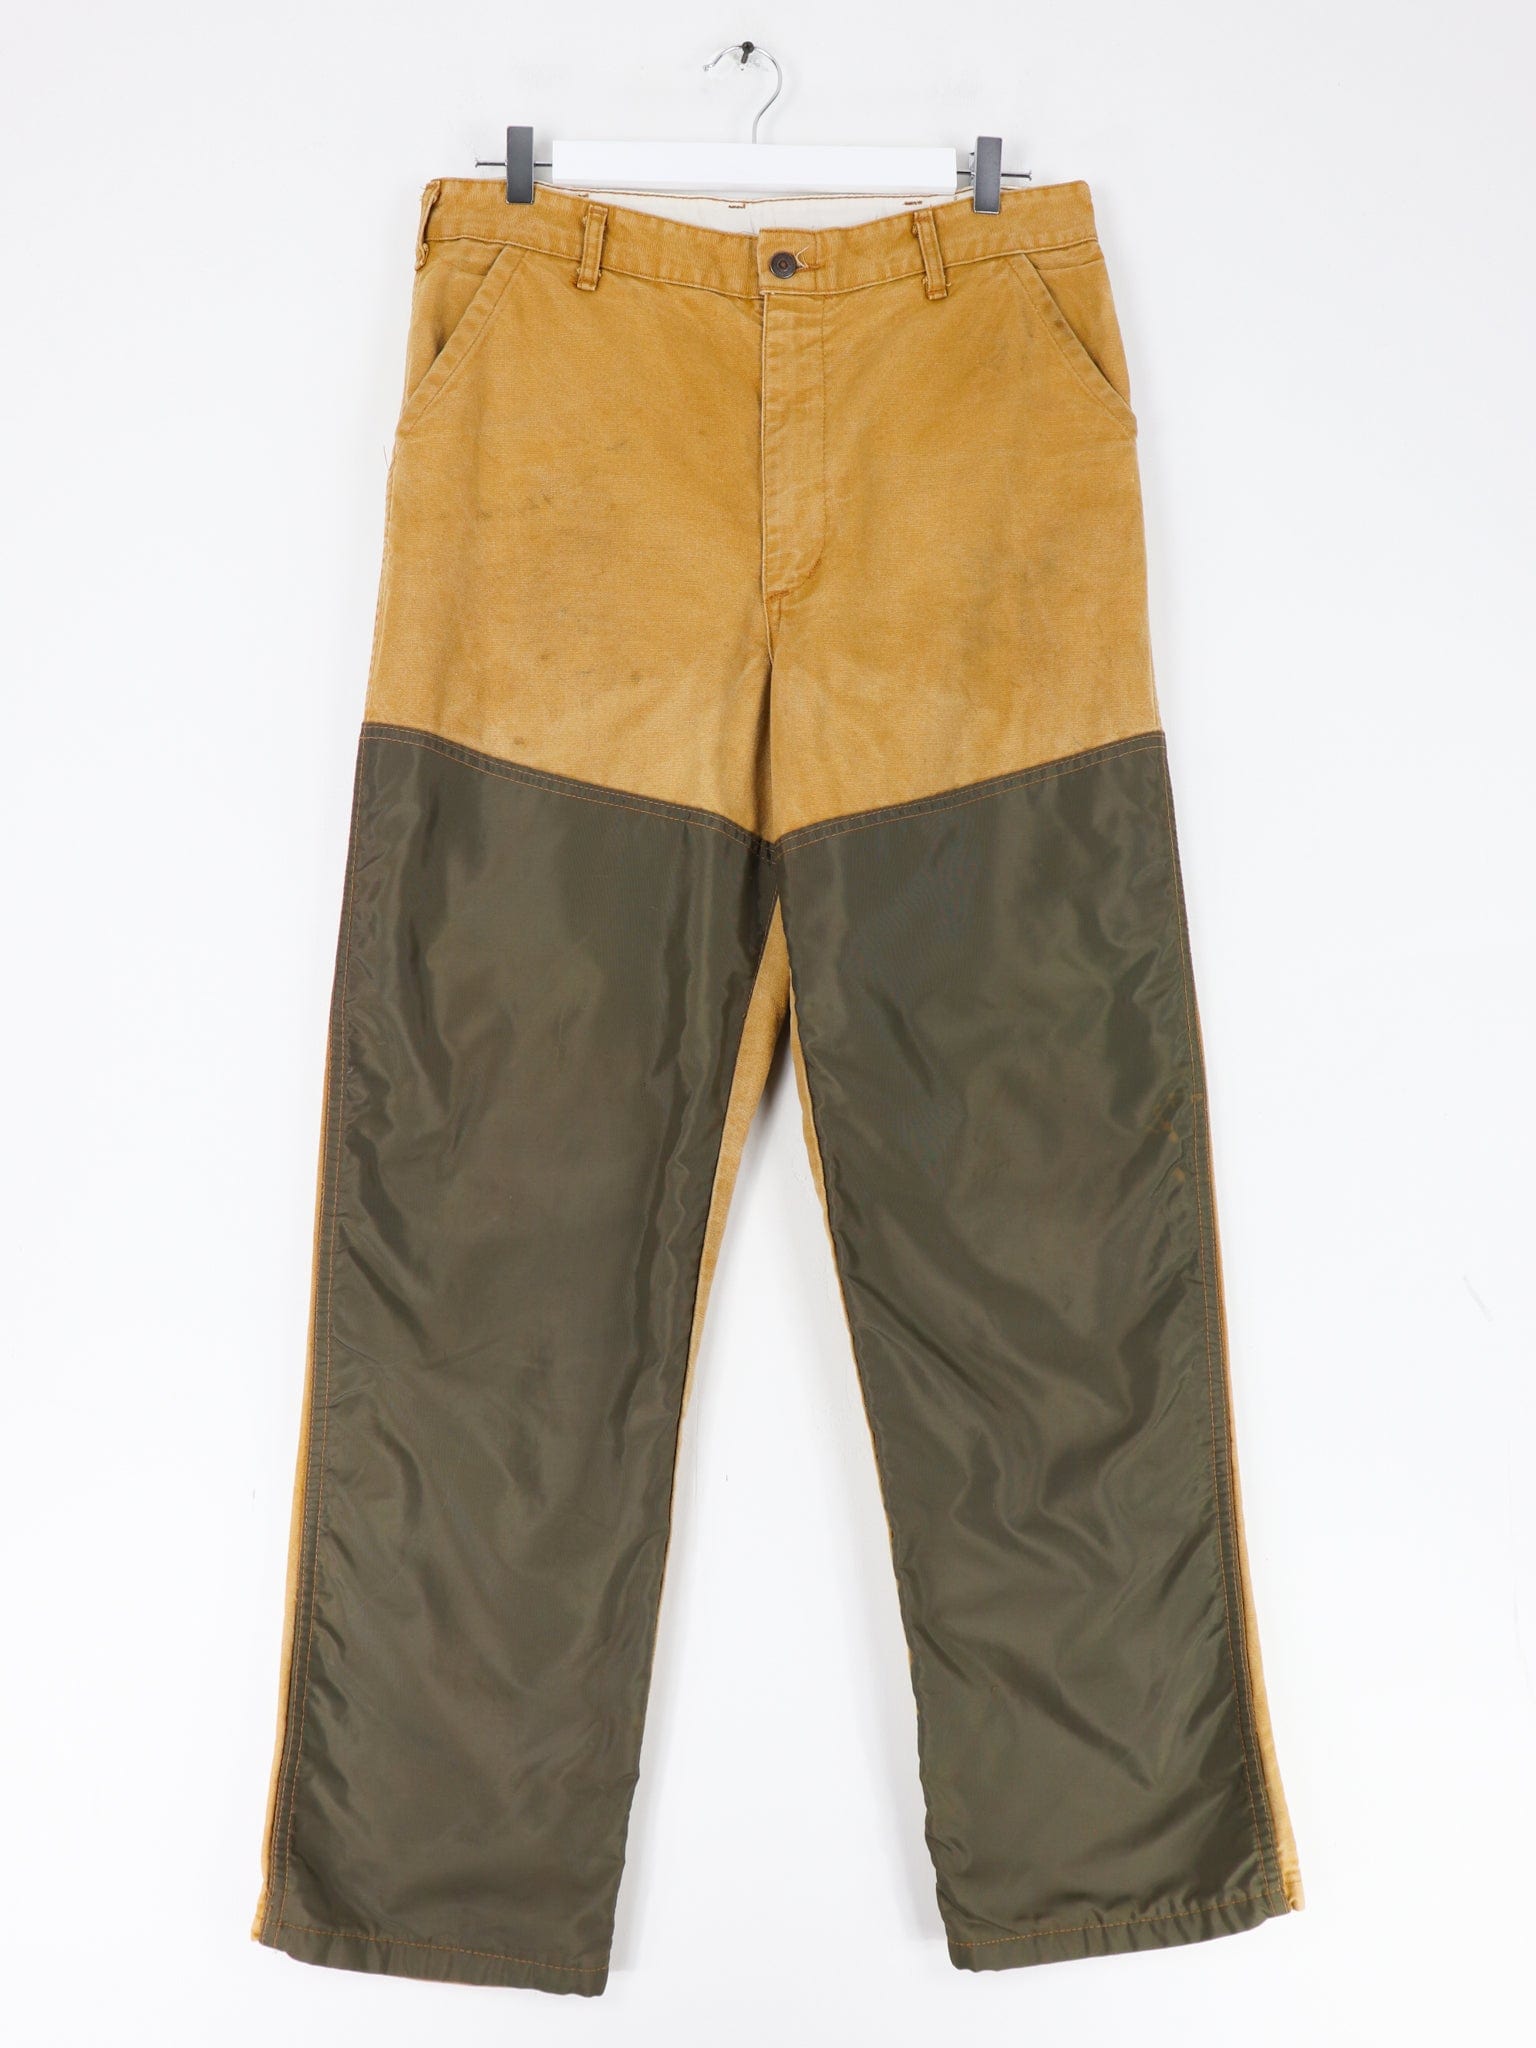 Vintage Saftbak Hunting Pants Size 34 x 31 – Proper Vintage